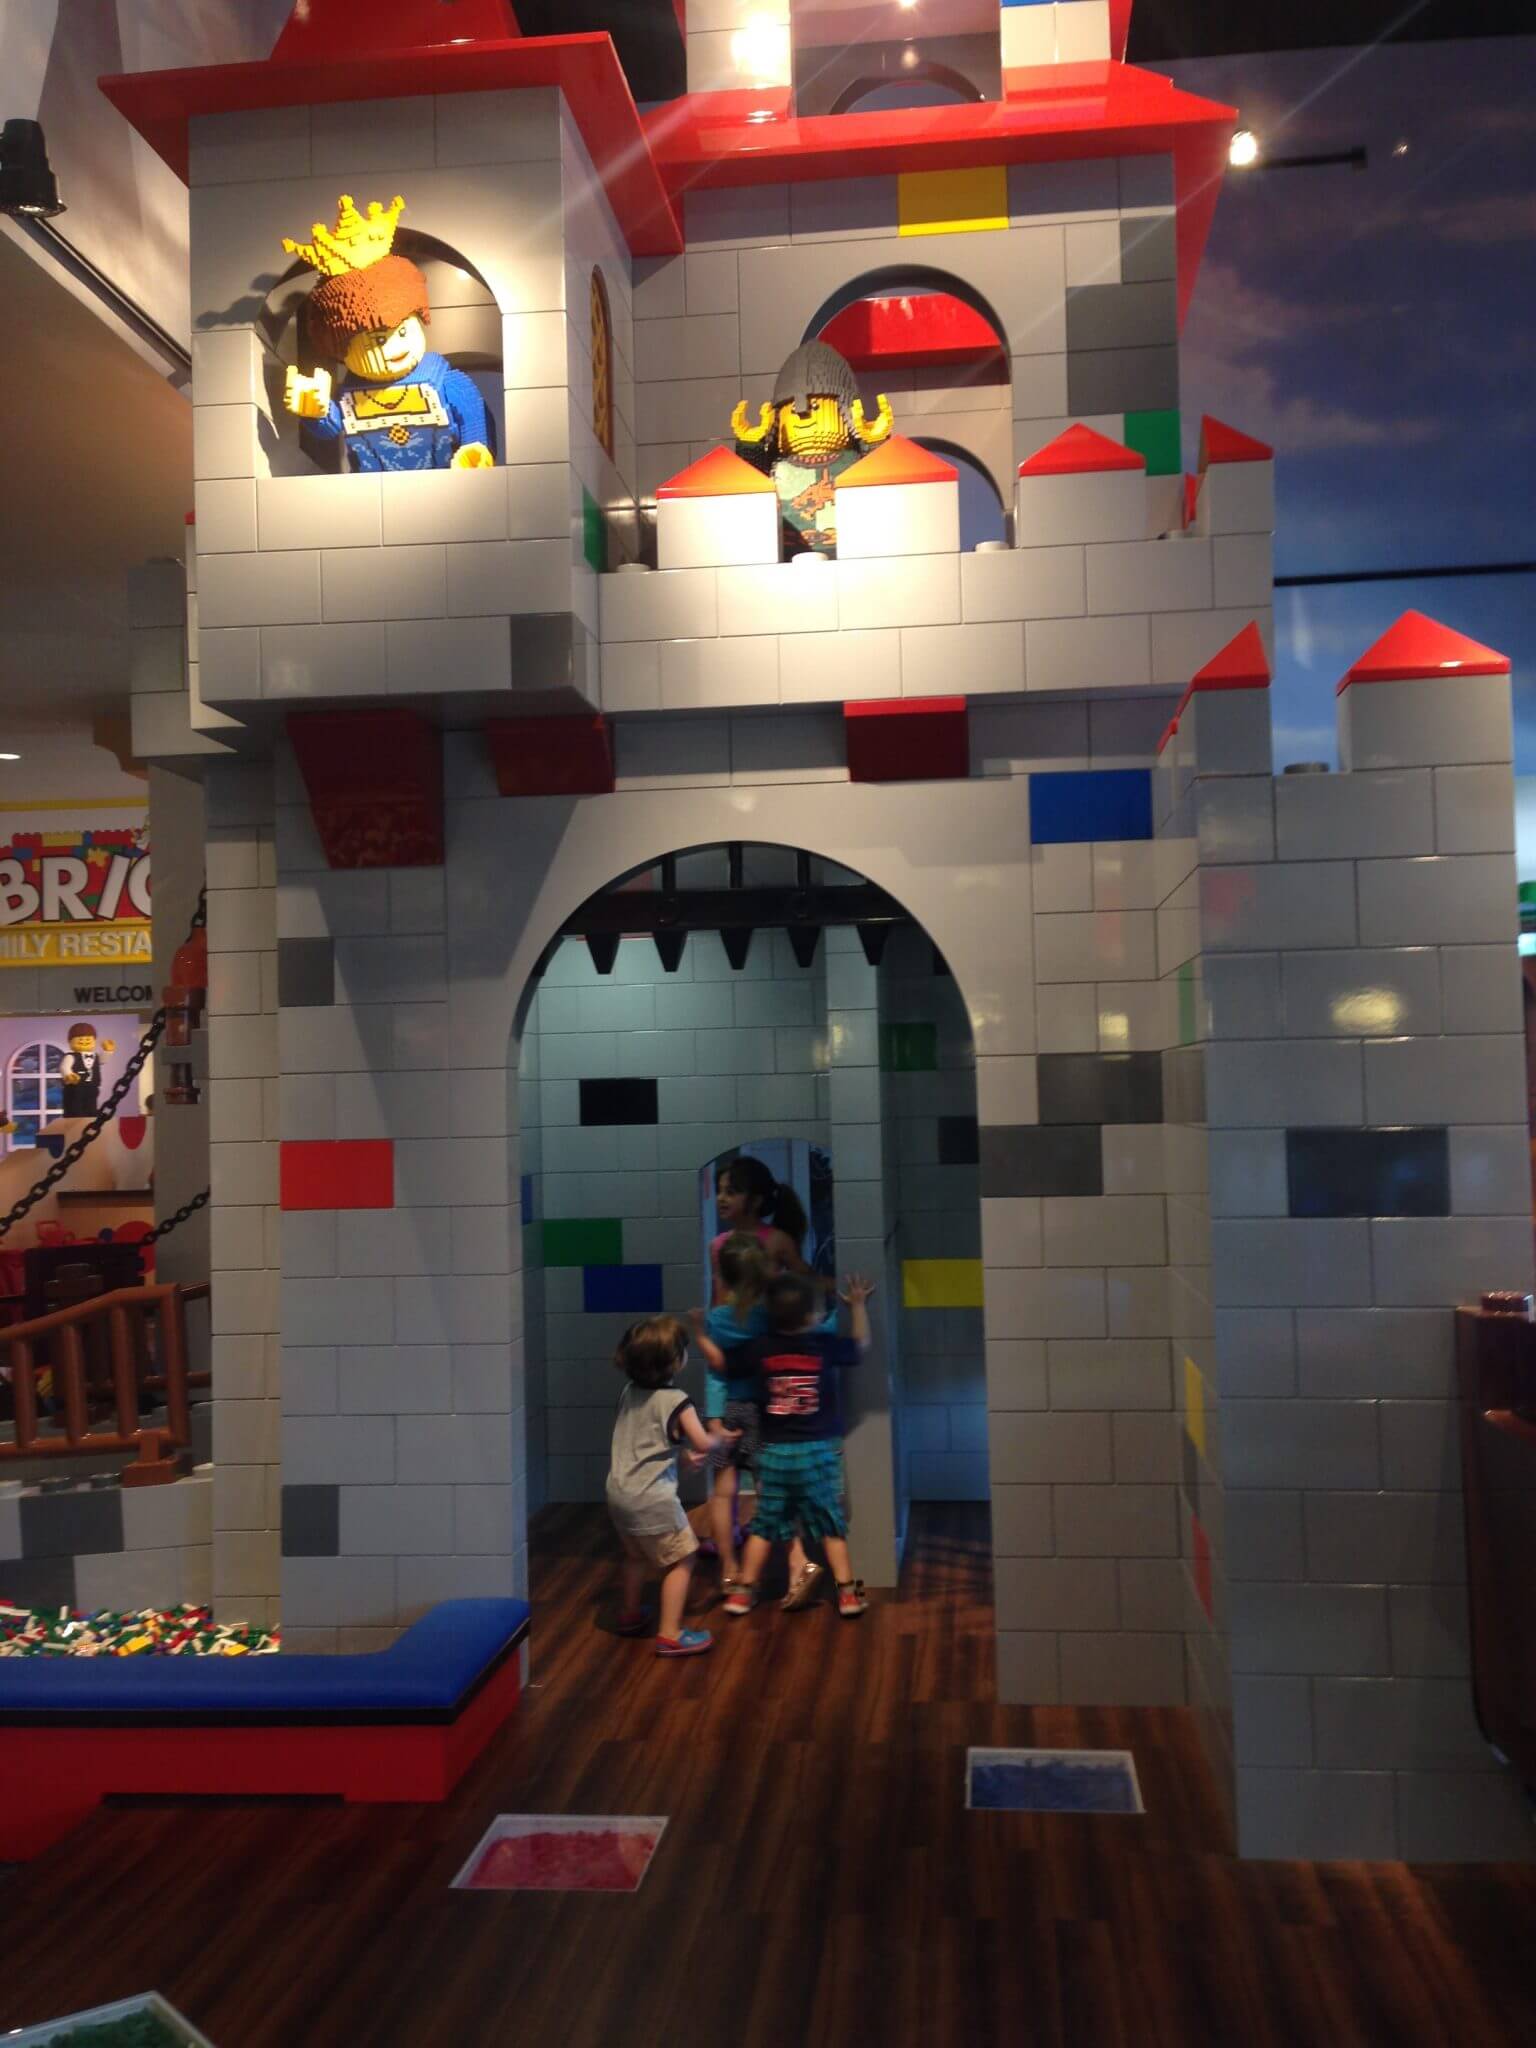 The lobby of the Legoland Hotel.